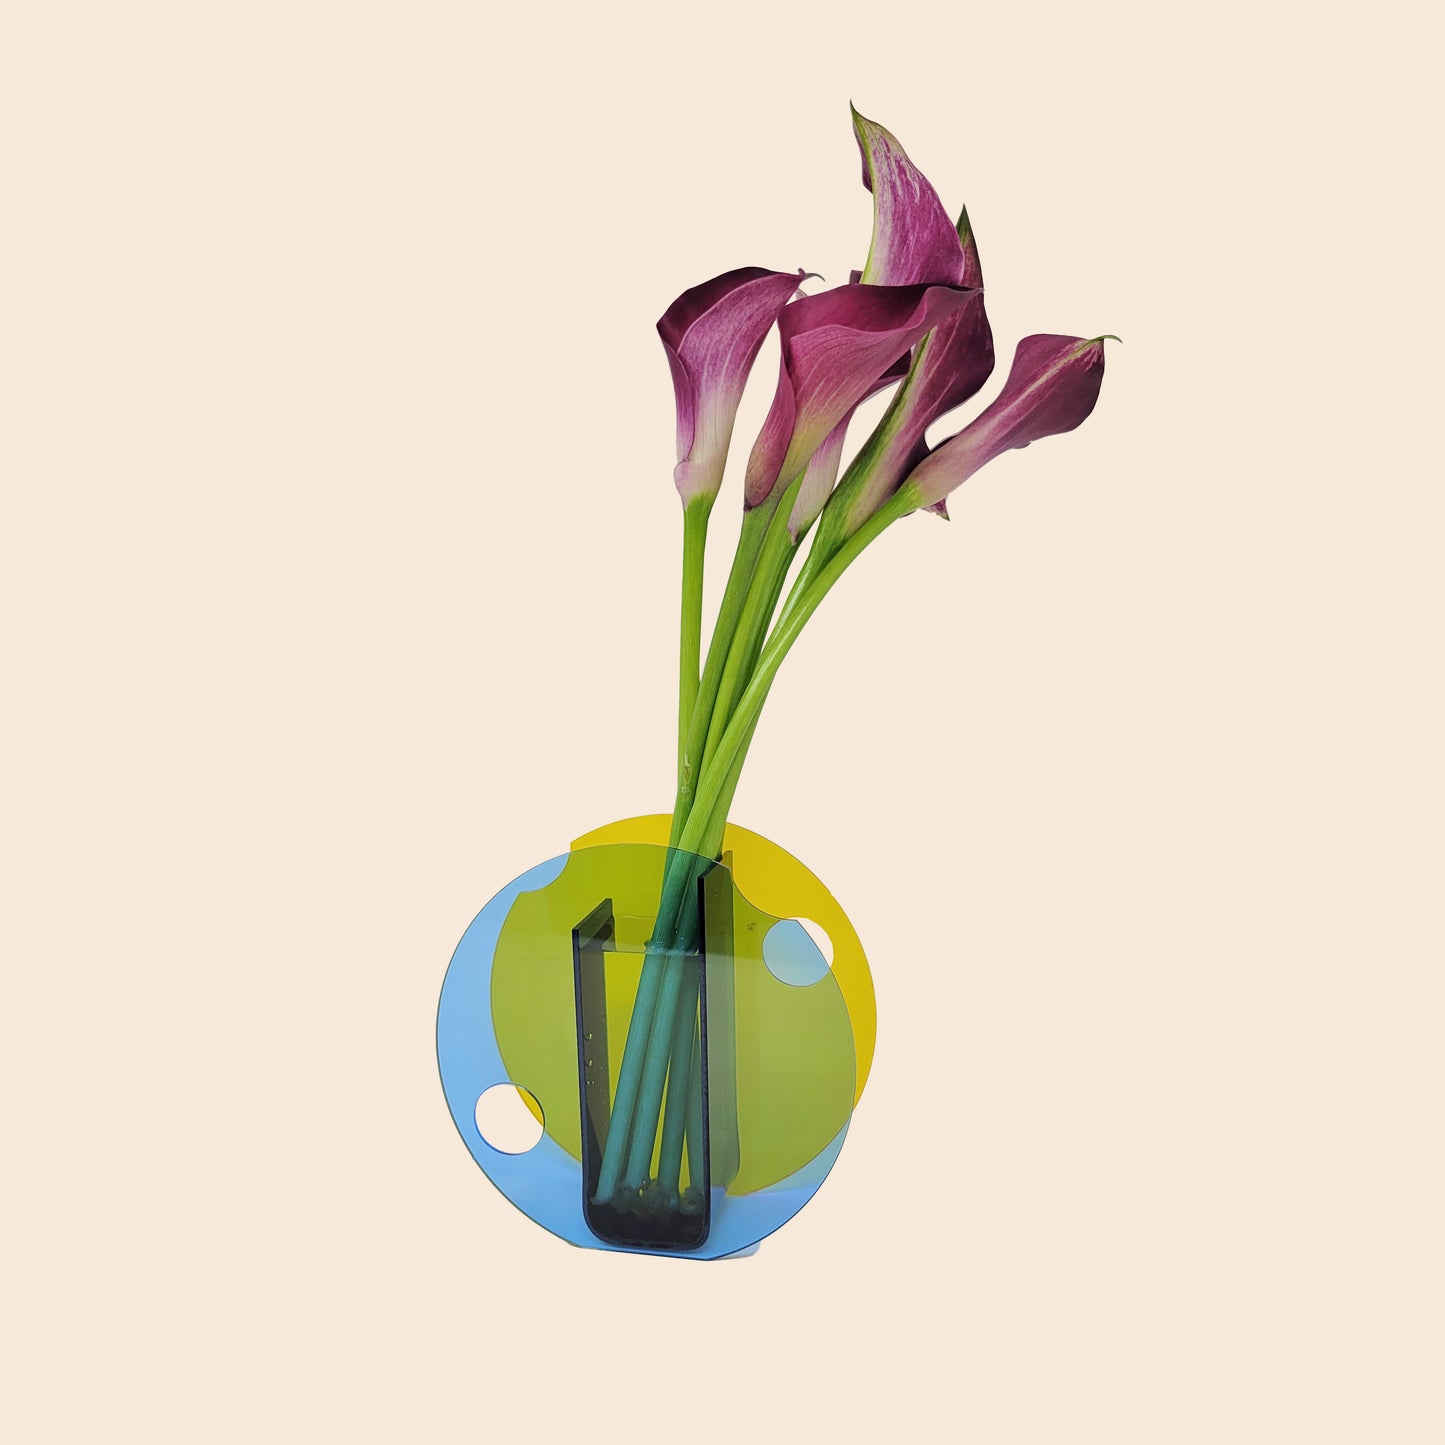 Multicolored Minimalism in Round Cup Vase Design